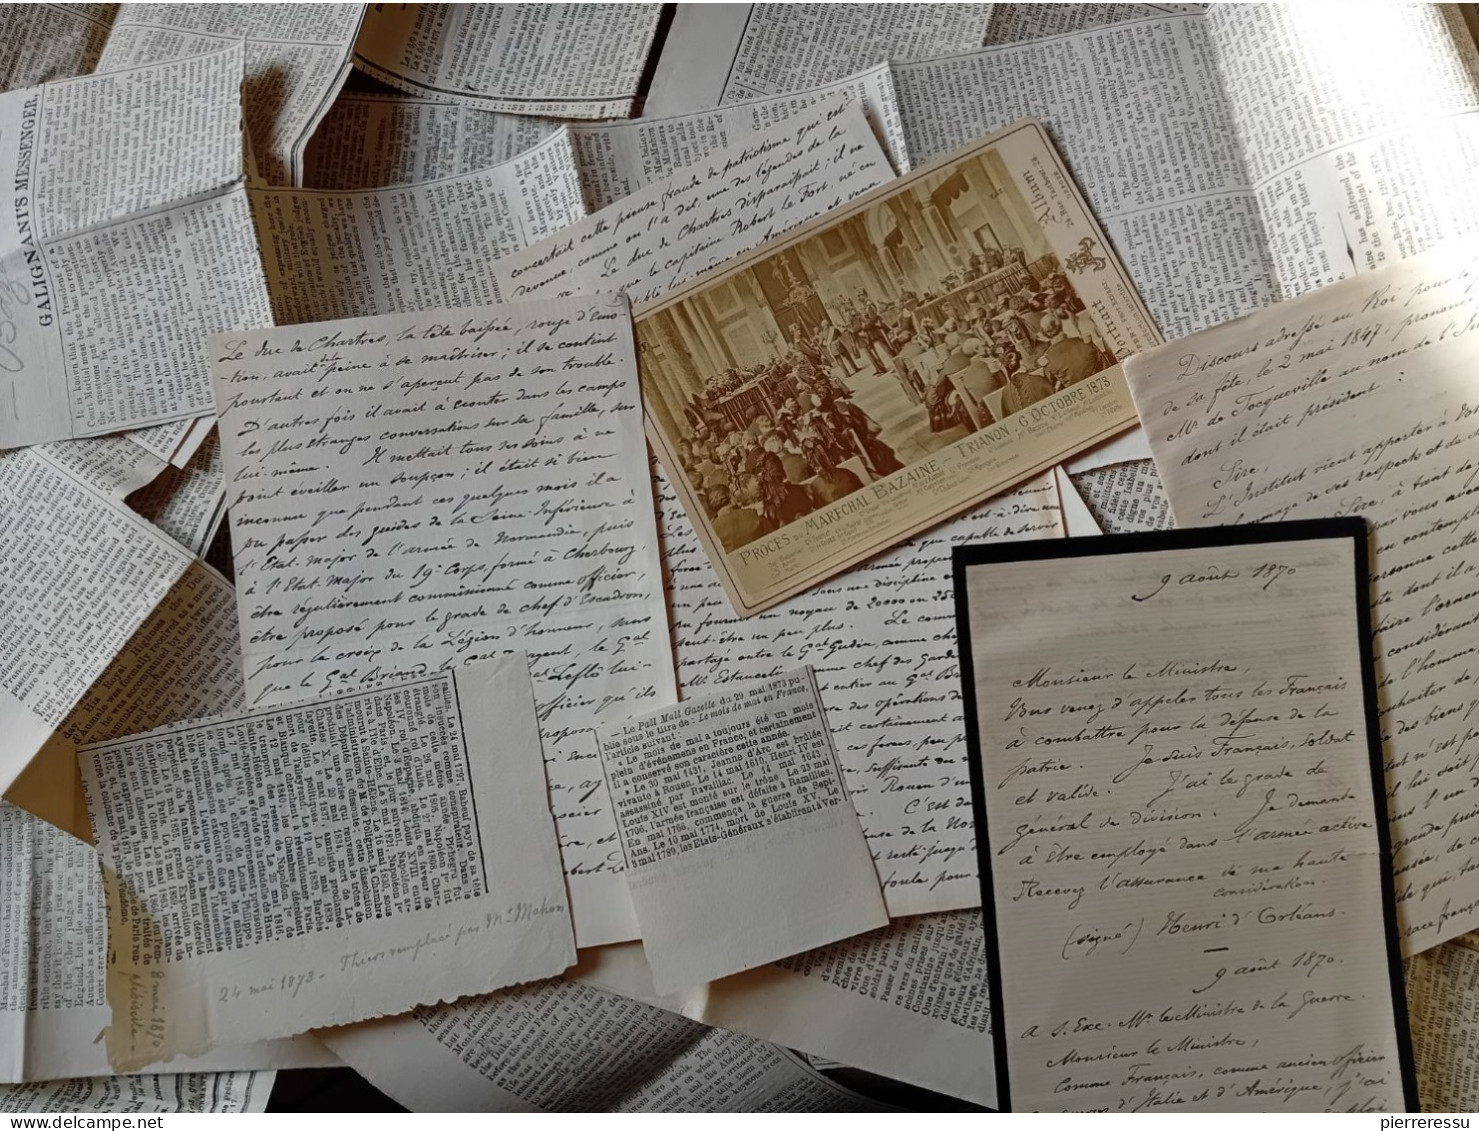 PHOTO APPERT A PARIS PROCES MARECHAL BAZAINE MANUSCRITS DUC D AUMALE ? DIVERSES COUPURES DE JOURNAUX TRIANON 1873 - Documents Historiques